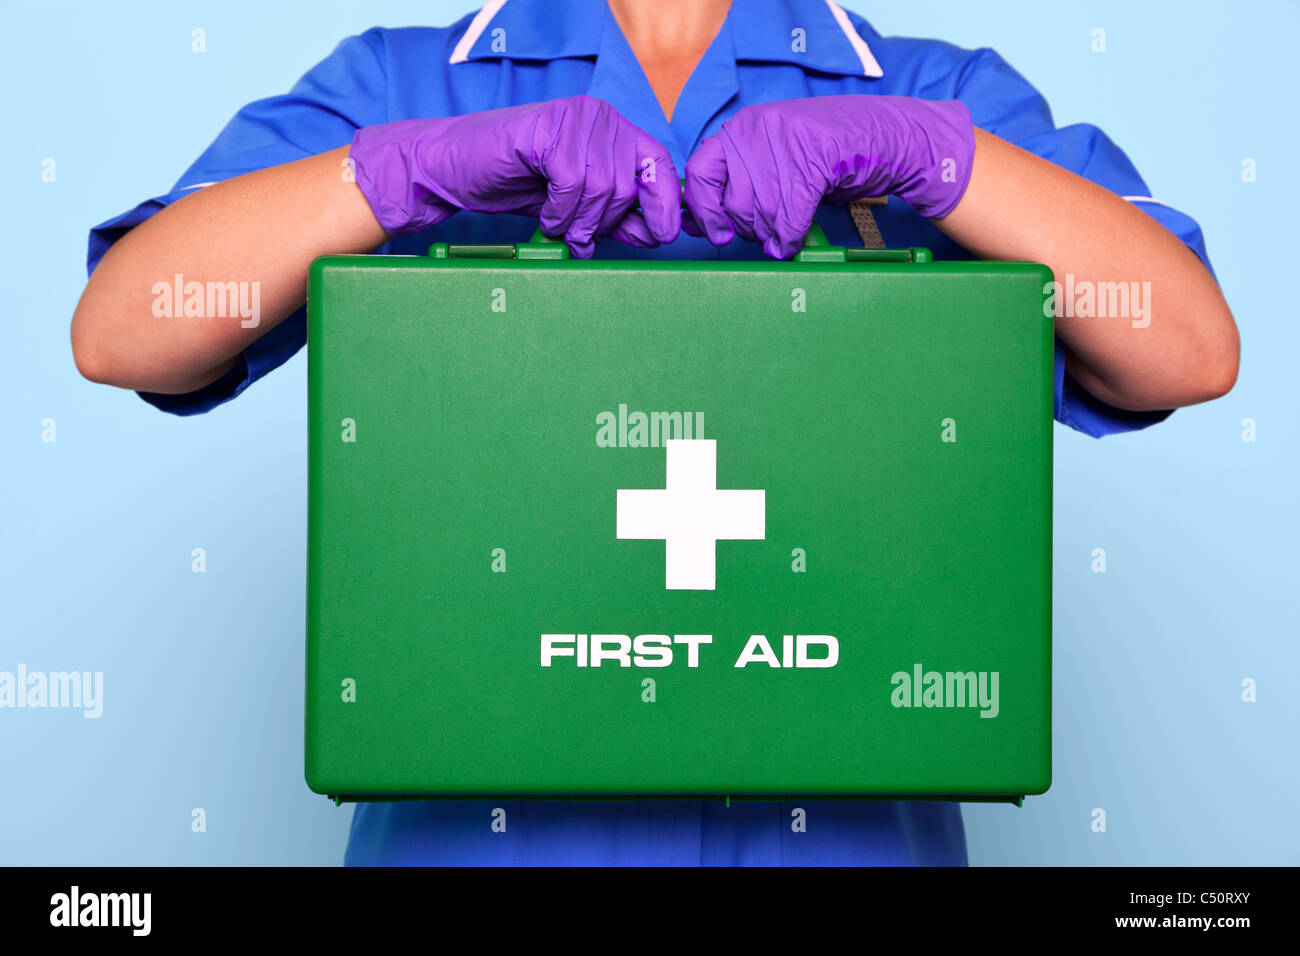 Foto von einer Krankenschwester in Uniform hält einen grünen Verbandskasten. Stockfoto